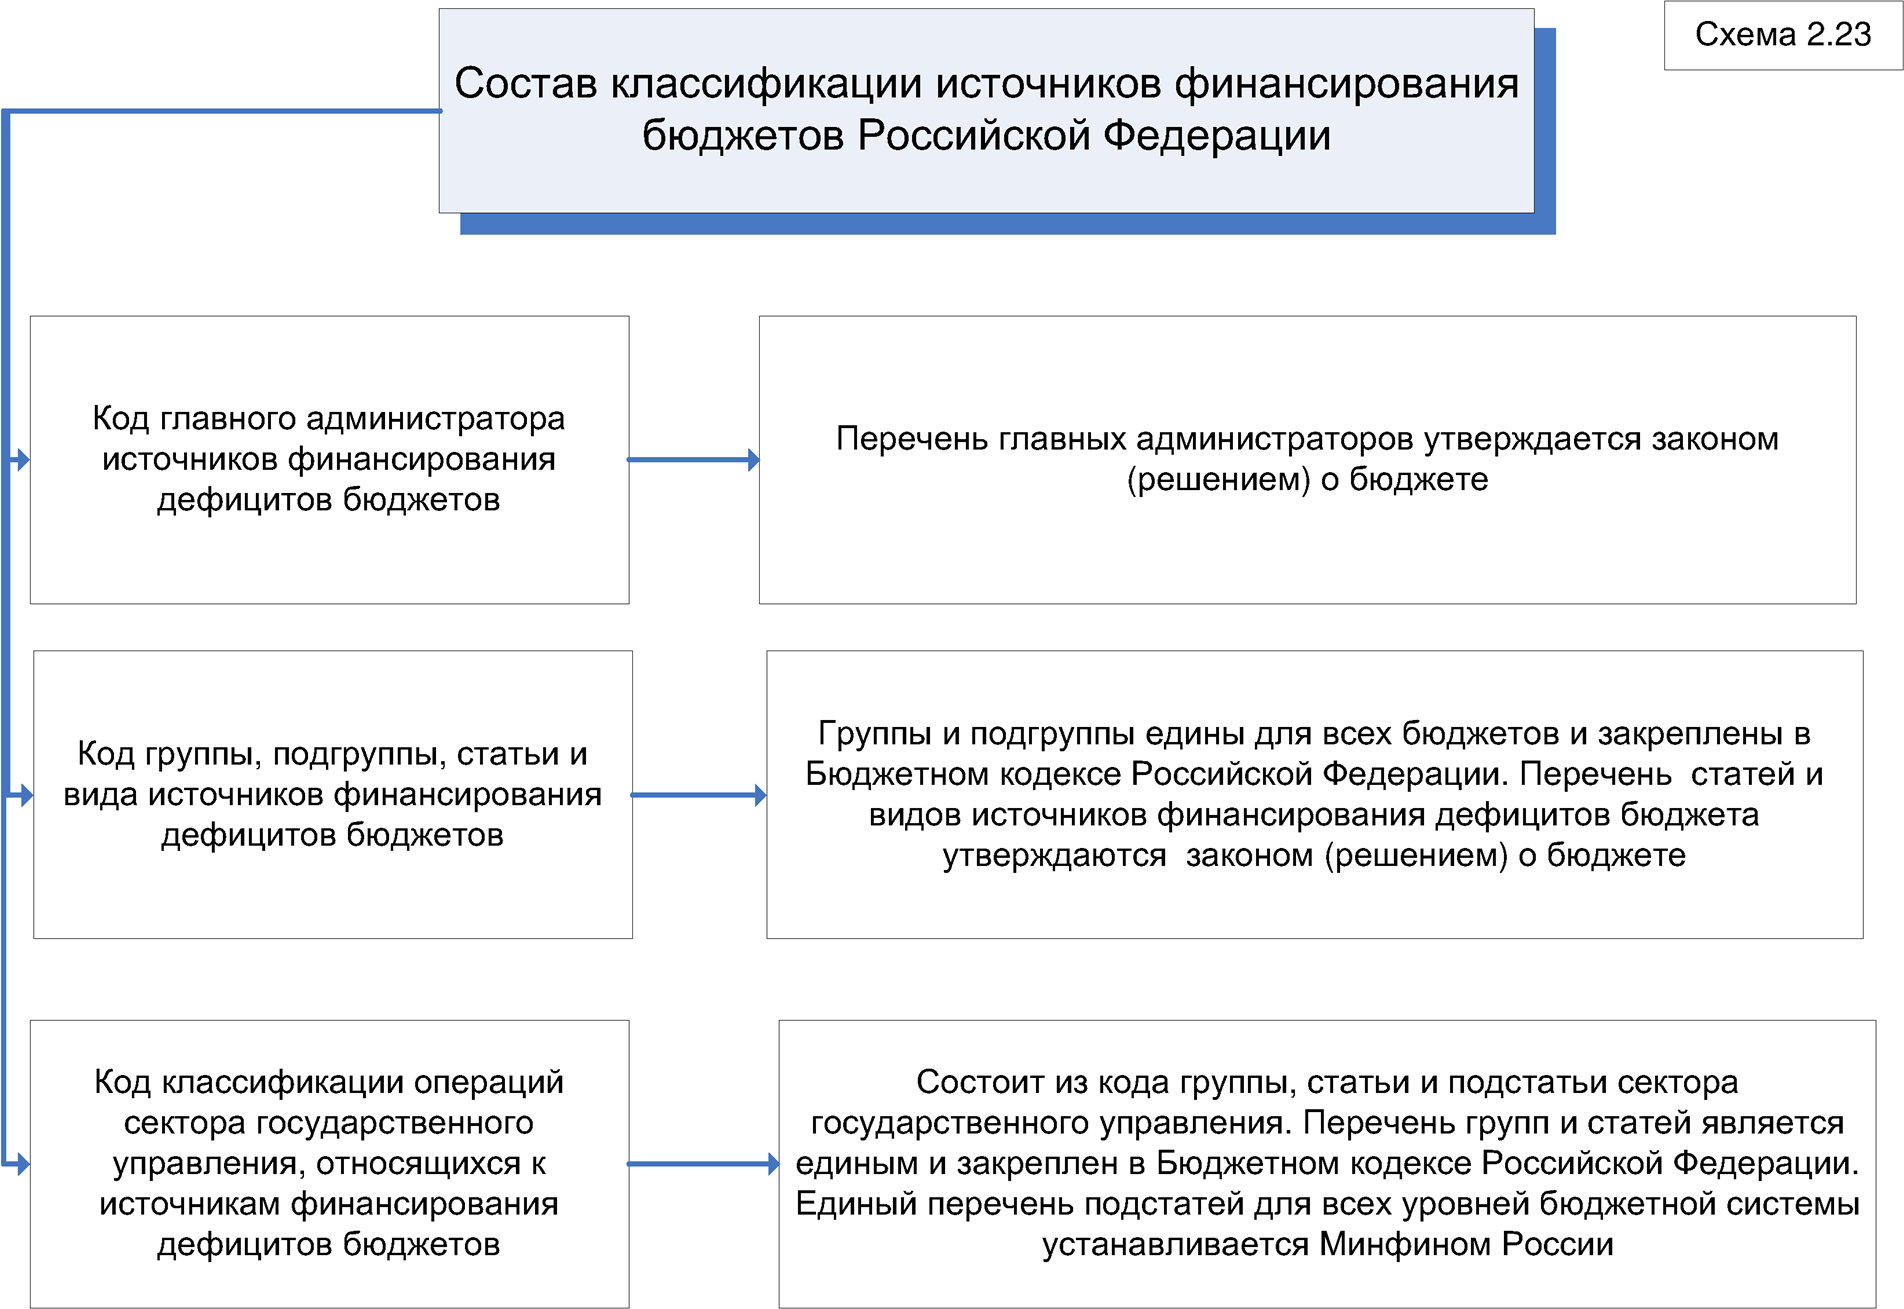 Состав классификации источников финансирования бюджетов Российской Федерации